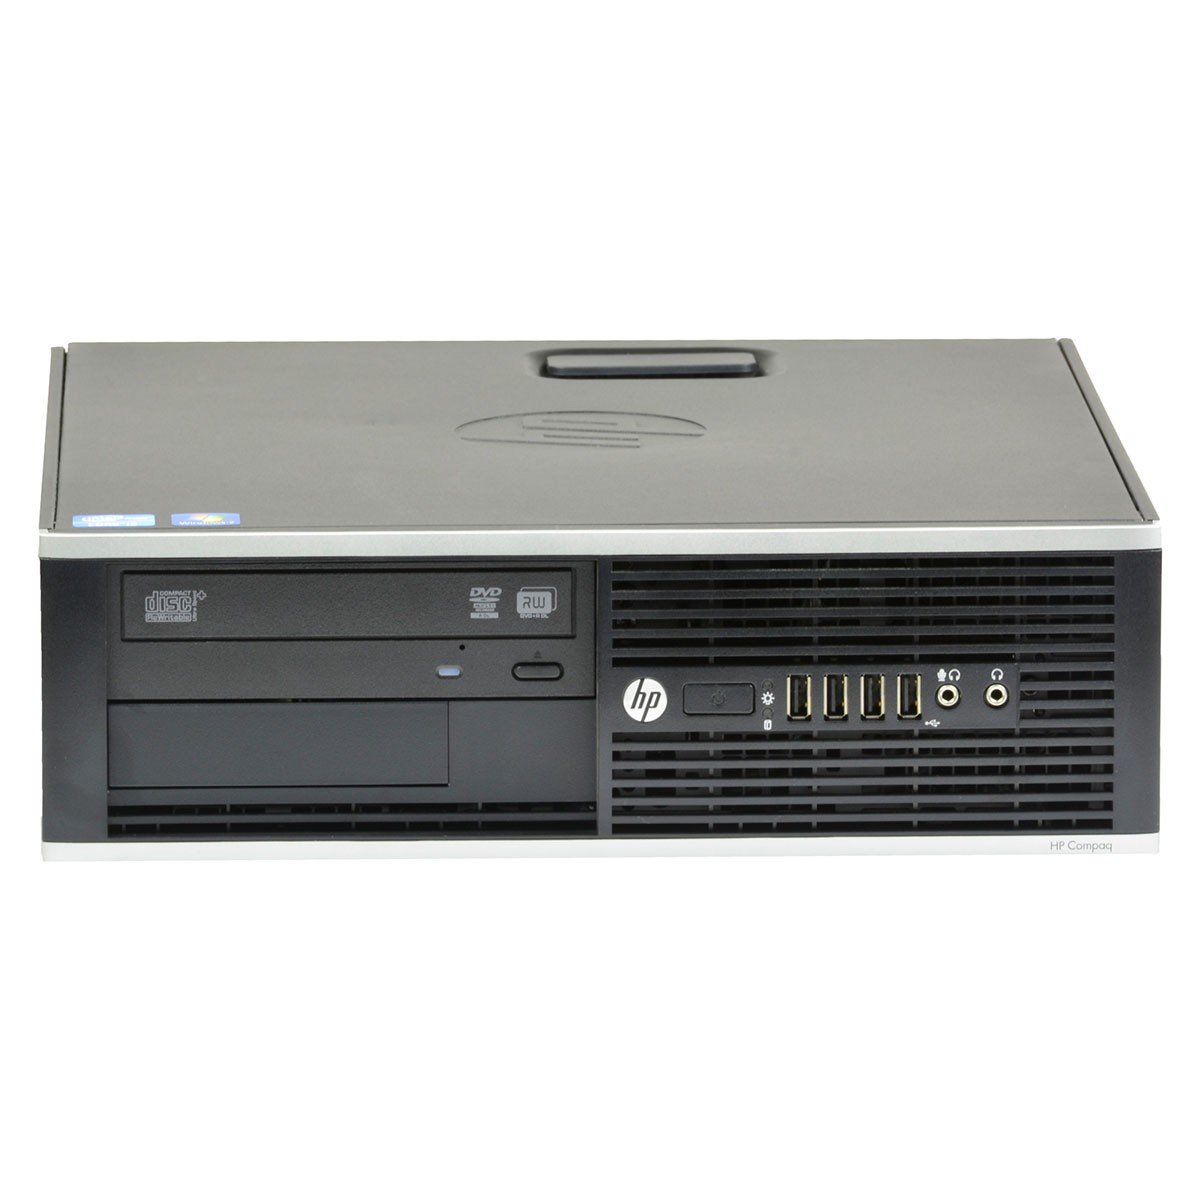 HP 8200 Elite SFF, vedeta categoriei calculatoare refurbished de pe site-ul nostru